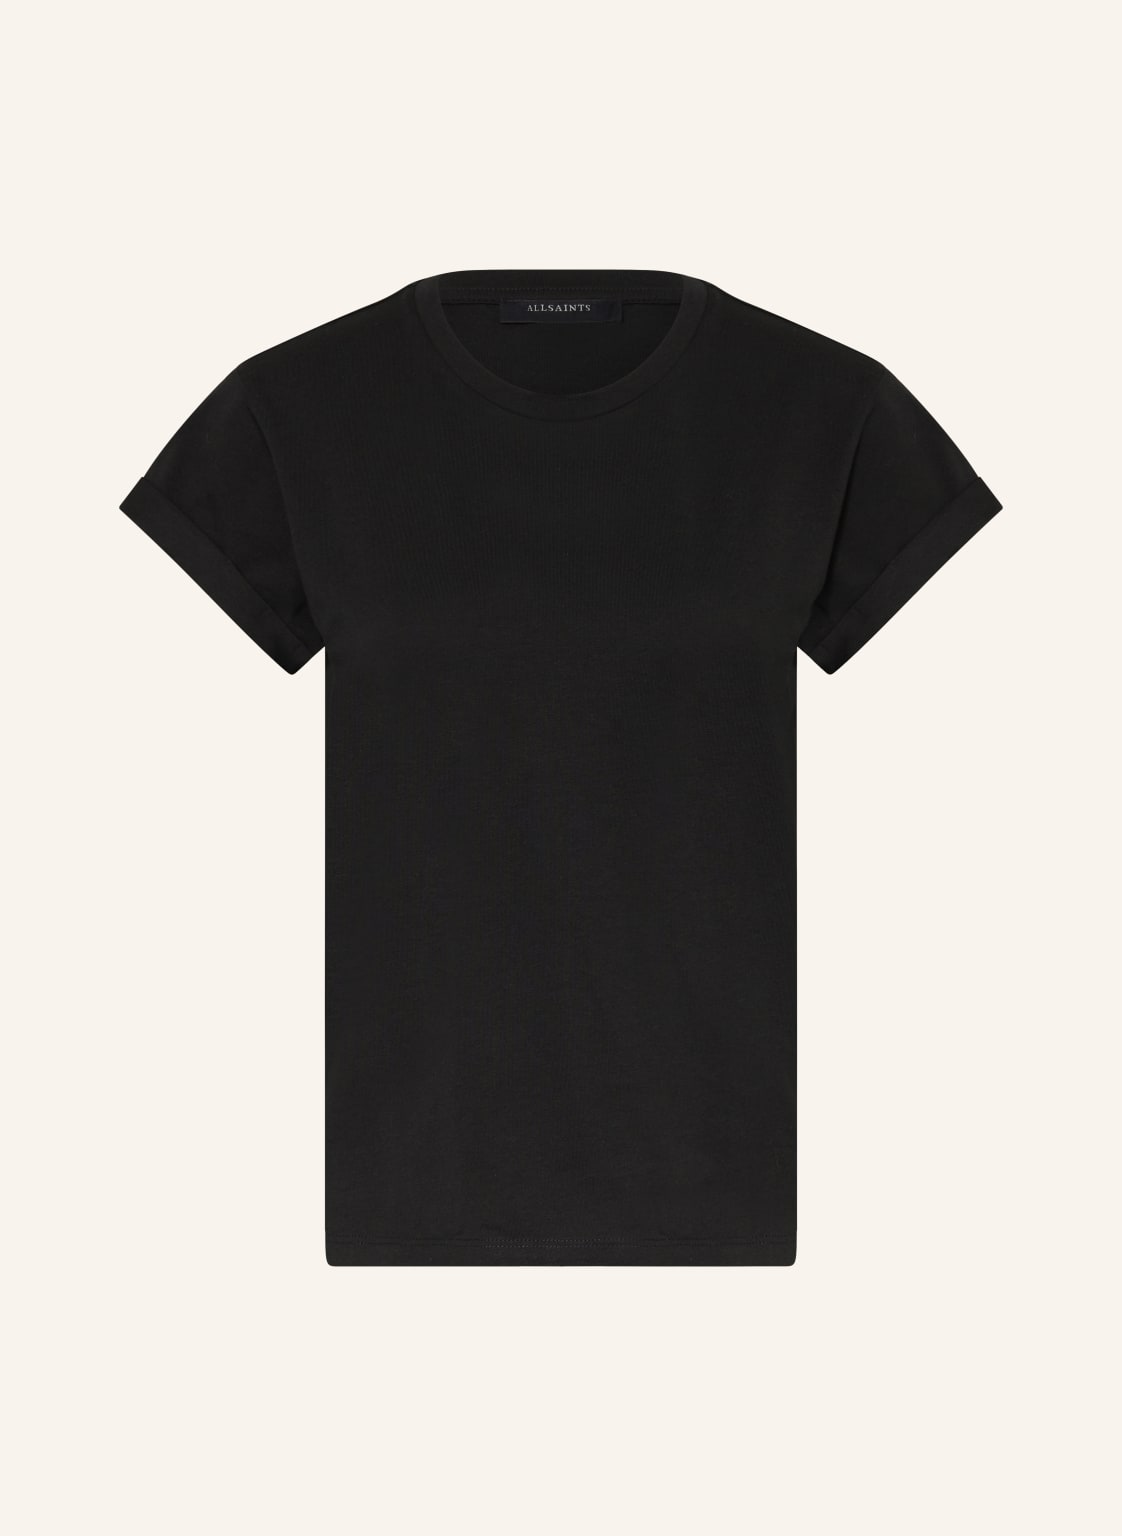 Allsaints T-Shirt Anna schwarz von AllSaints